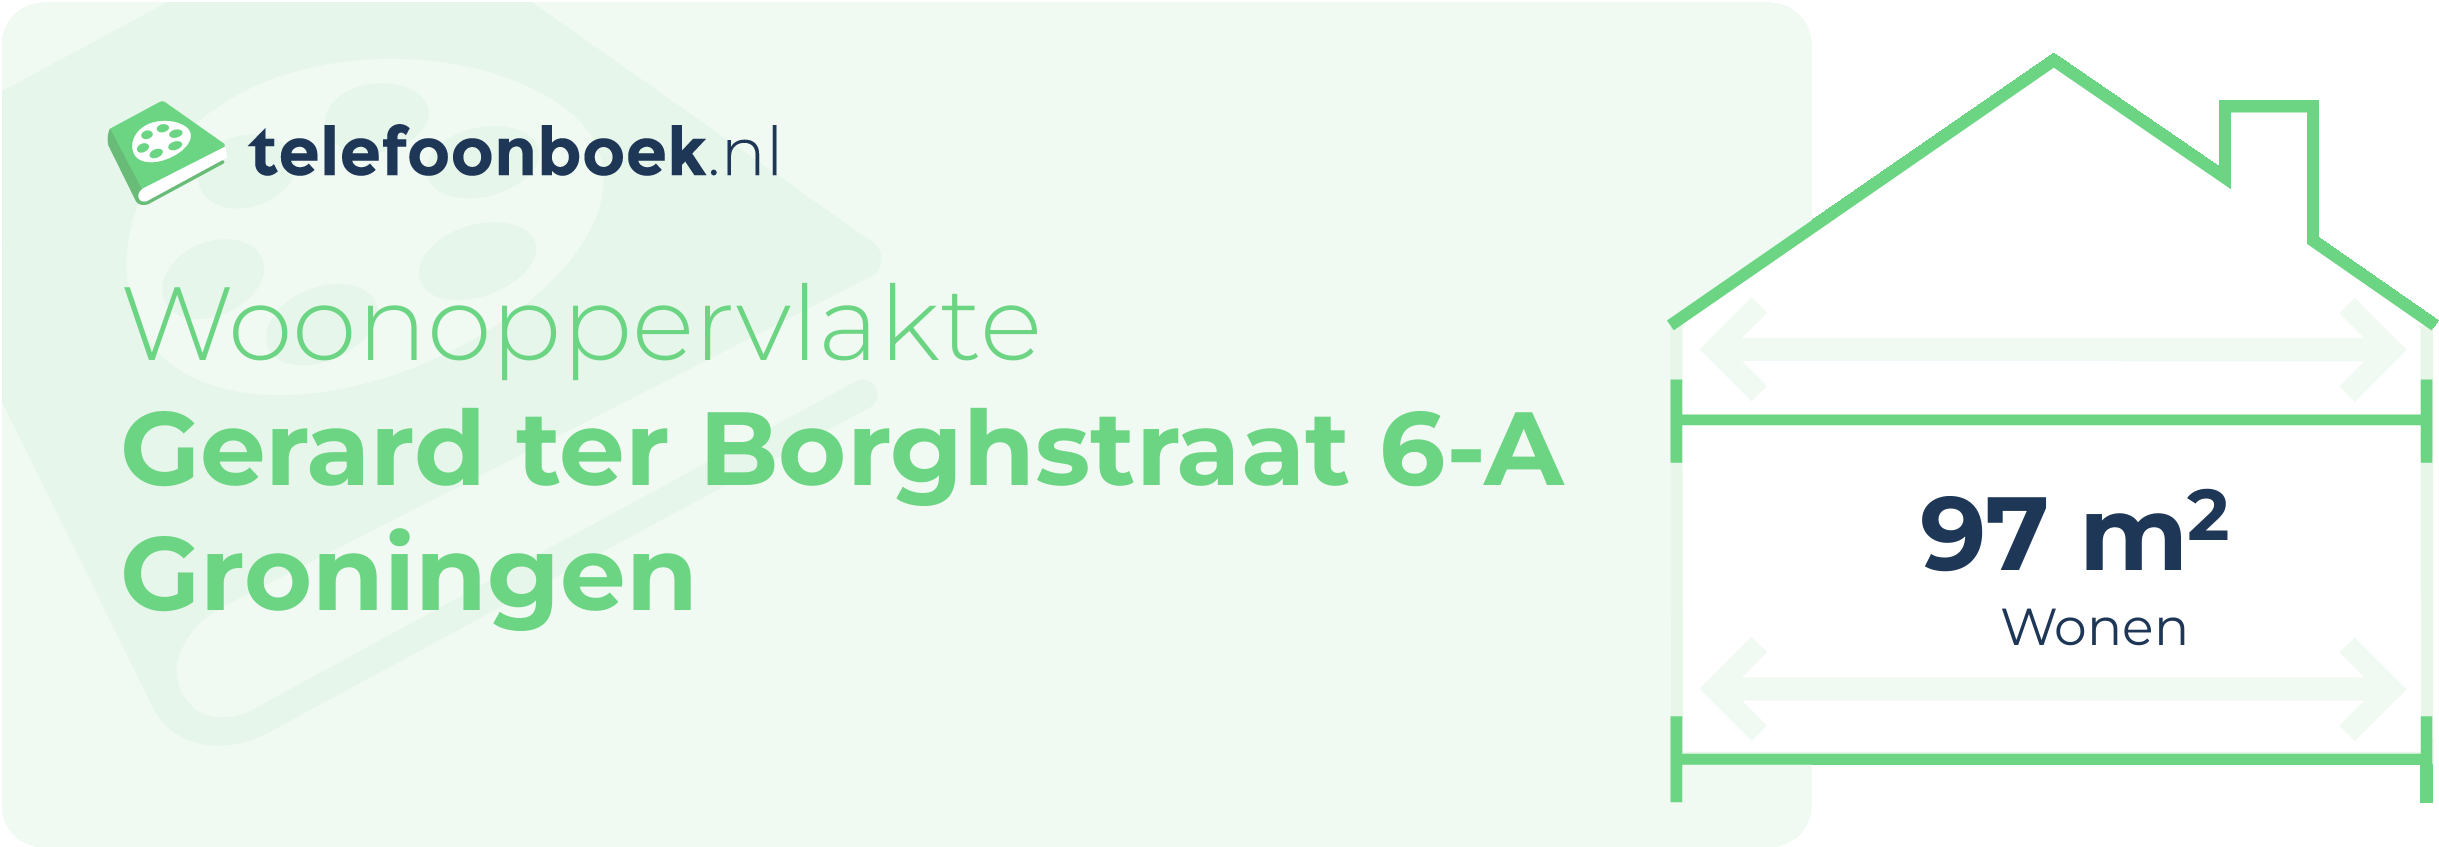 Woonoppervlakte Gerard Ter Borghstraat 6-A Groningen